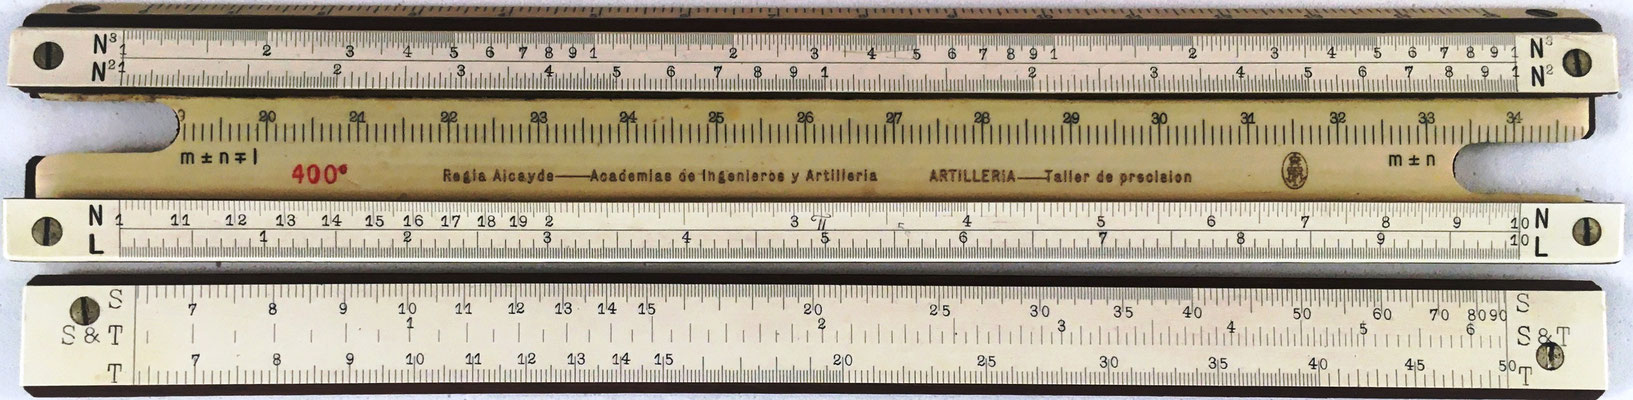 Regla Alcayde para las Academias de Ingenieros y Artillería, encargada su fabricación al Taller de Precisión de Artillería (Madrid), año 1912